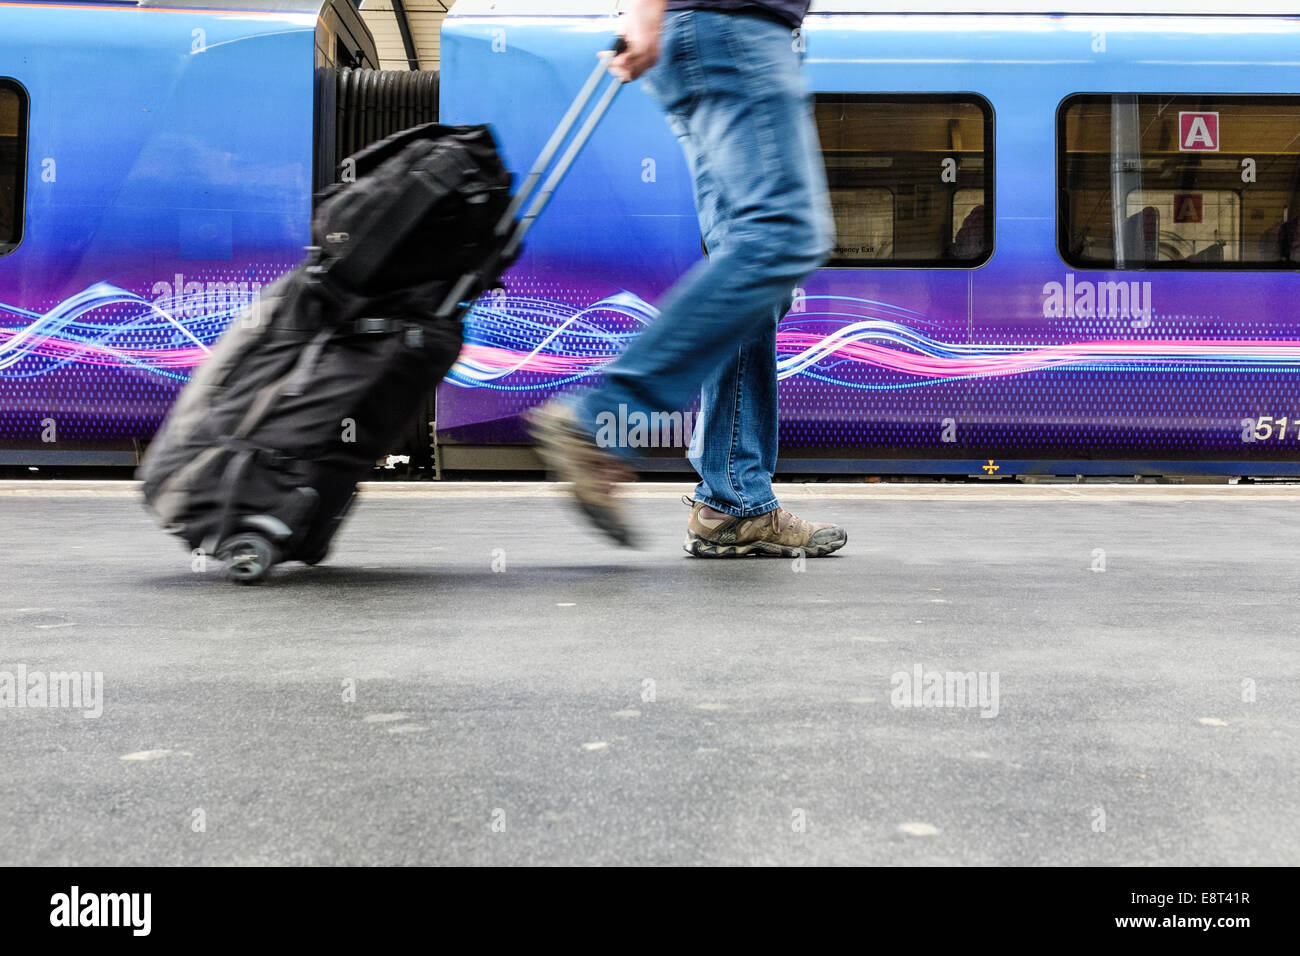 Un homme tire ses bagages des passagers du train soit quitter le train ou l'obtenir sur elle. Transport Voyage concept conceptuel Banque D'Images